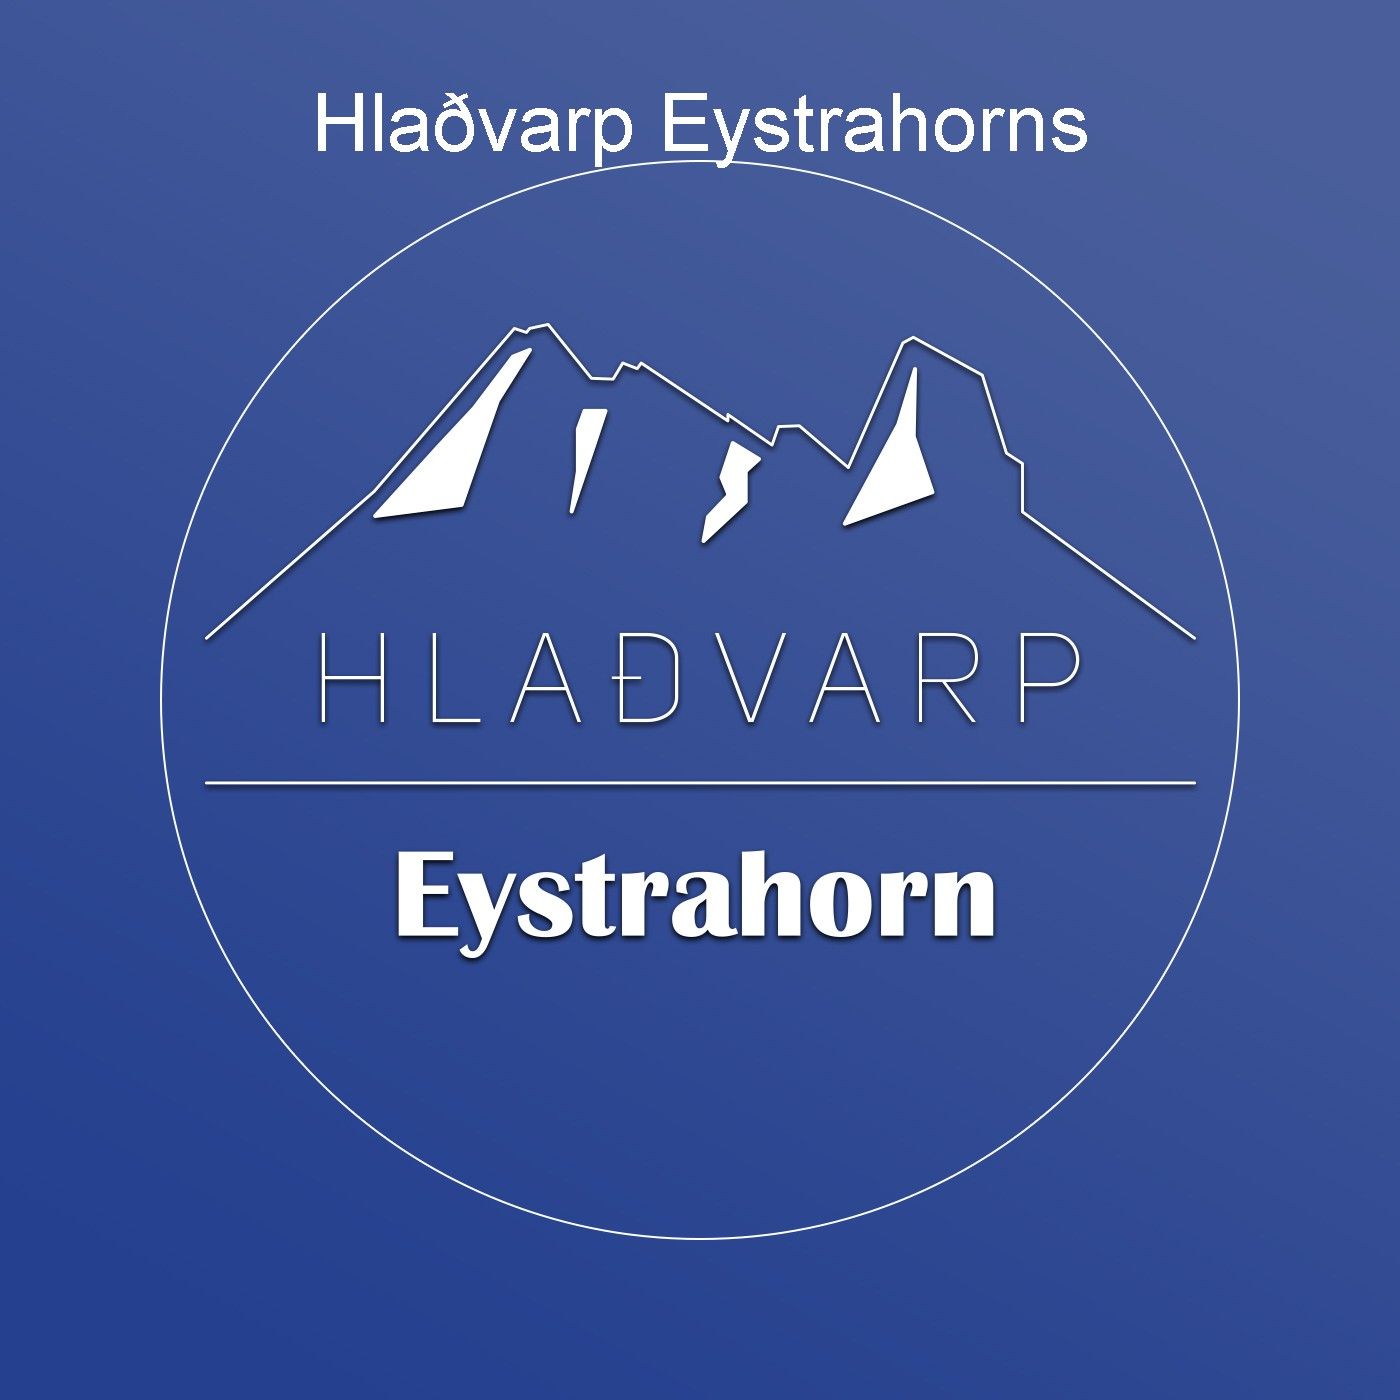 Hlaðvarp Eystrahorns